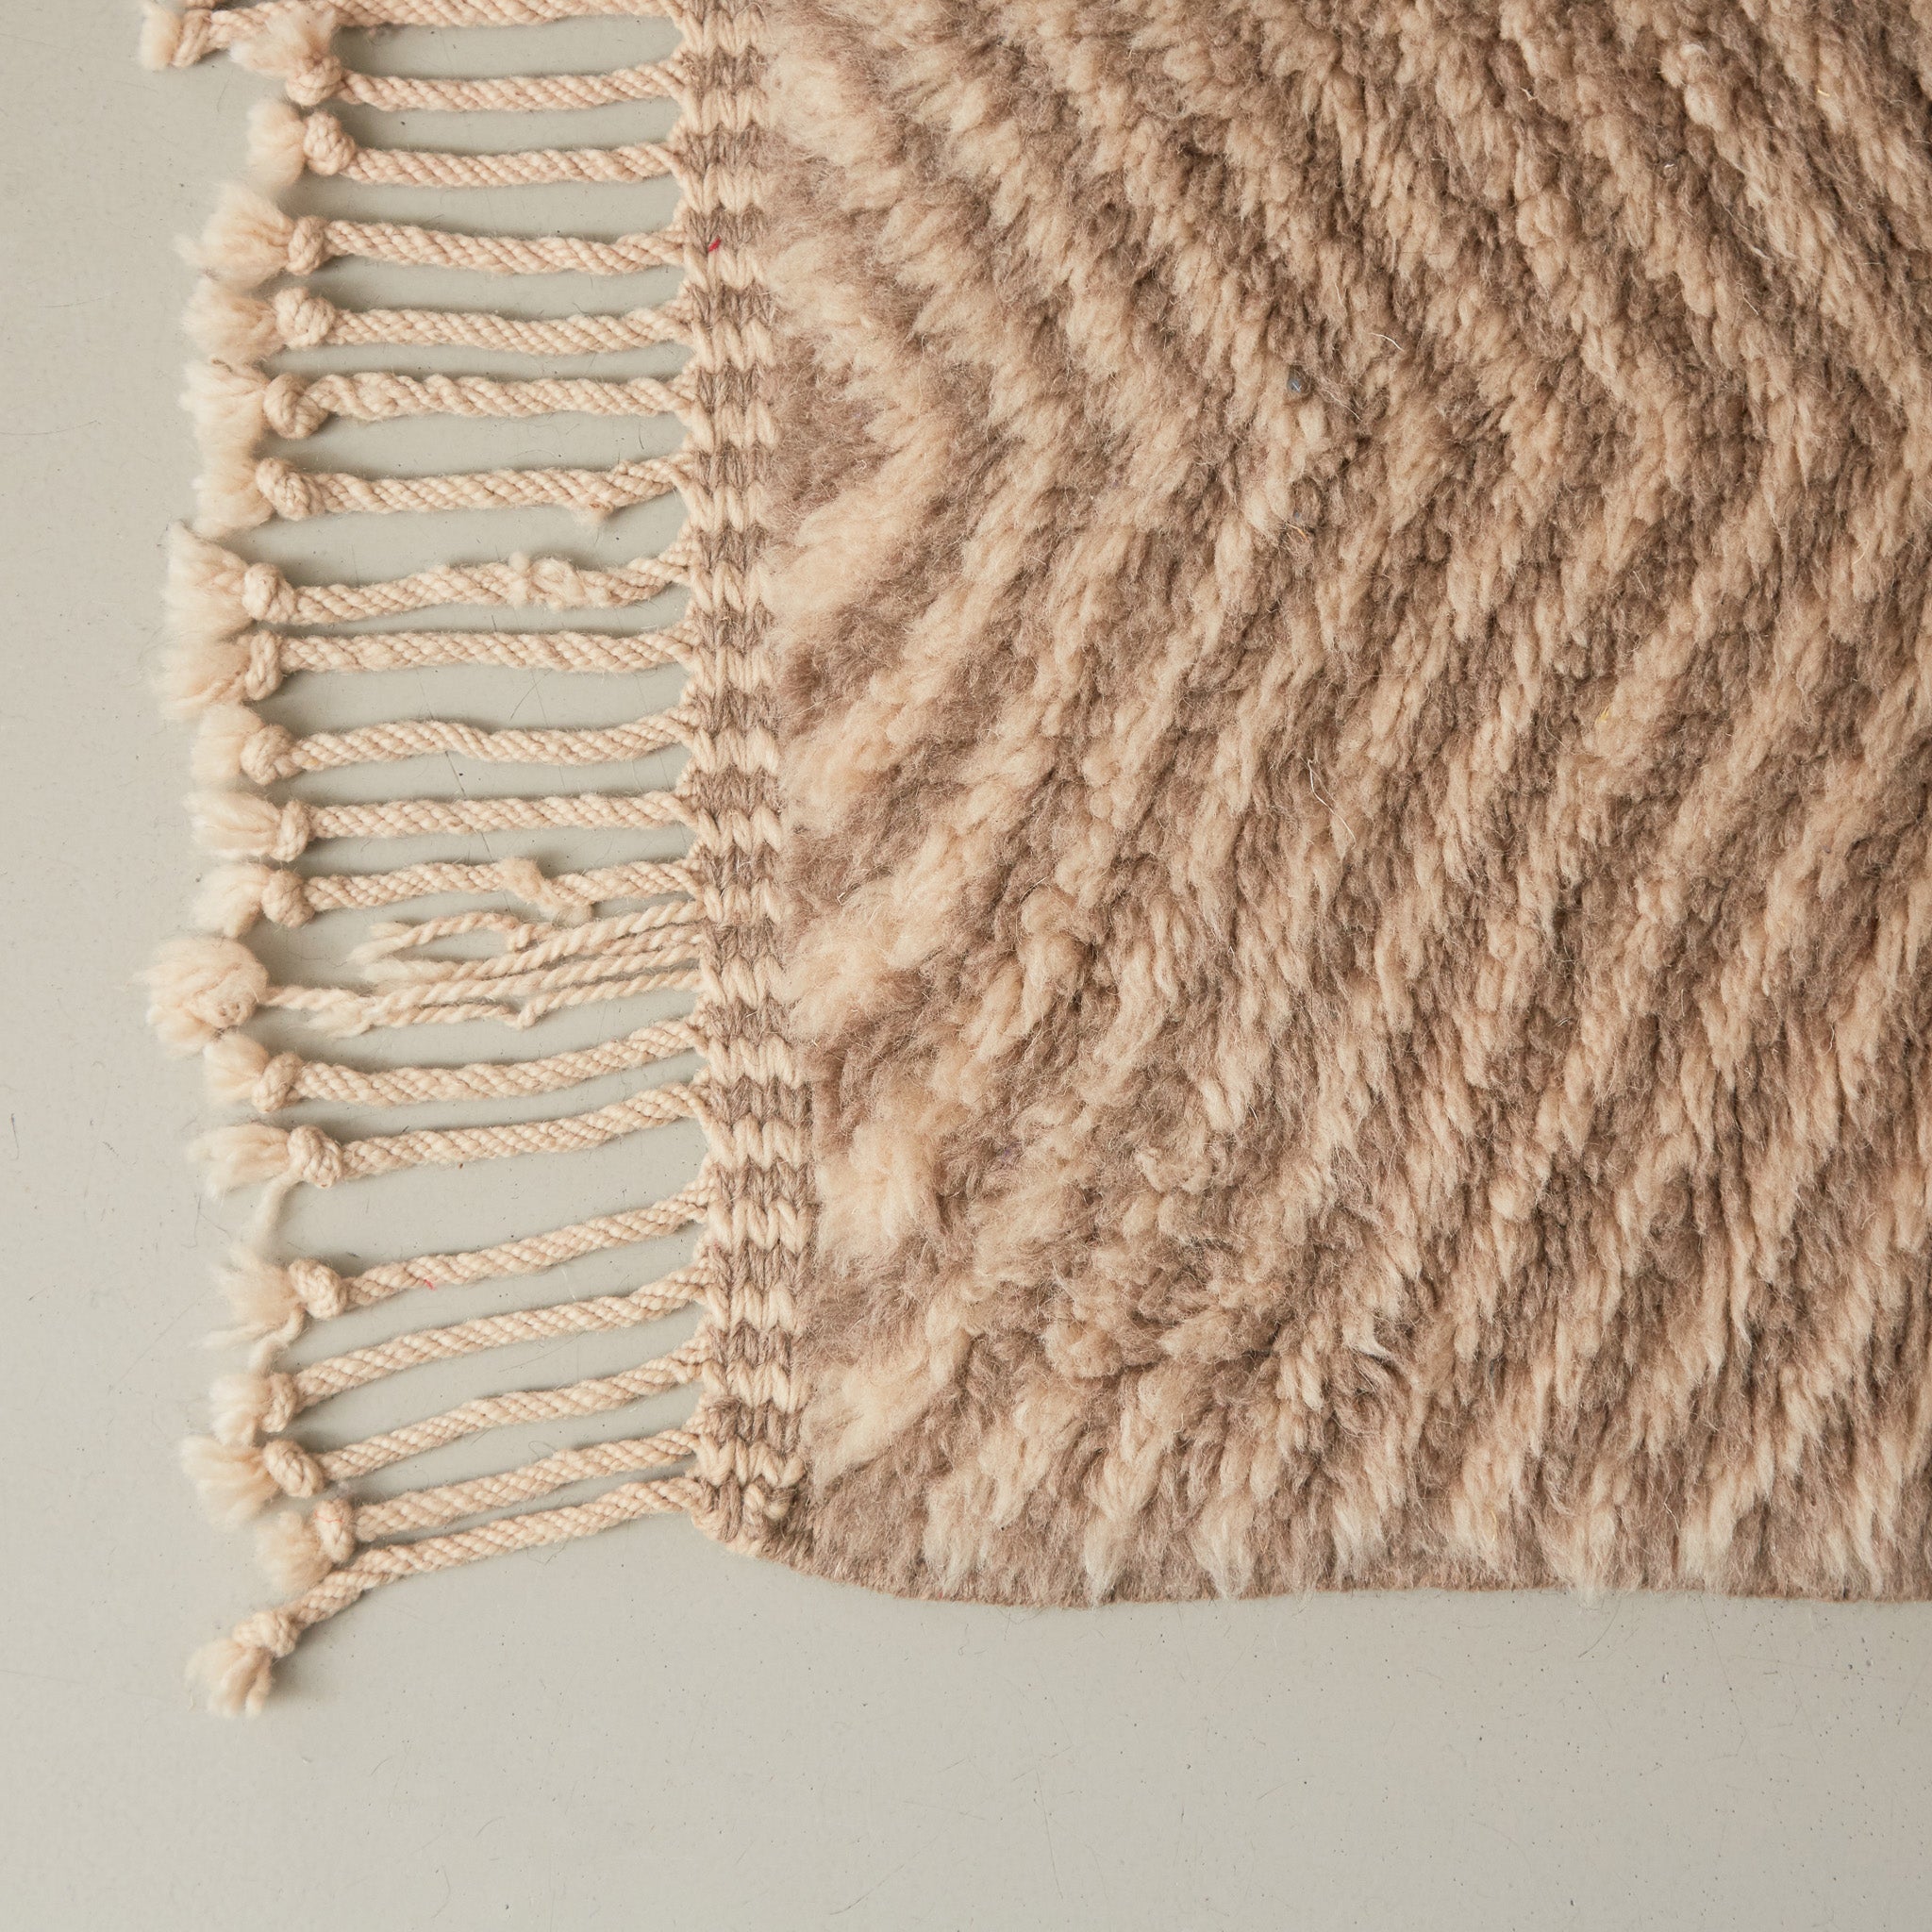 dettaglio dell'angolo e della frangia ben lavorata di un tappeto beni mrirt design contemporaneo color tortora bianco